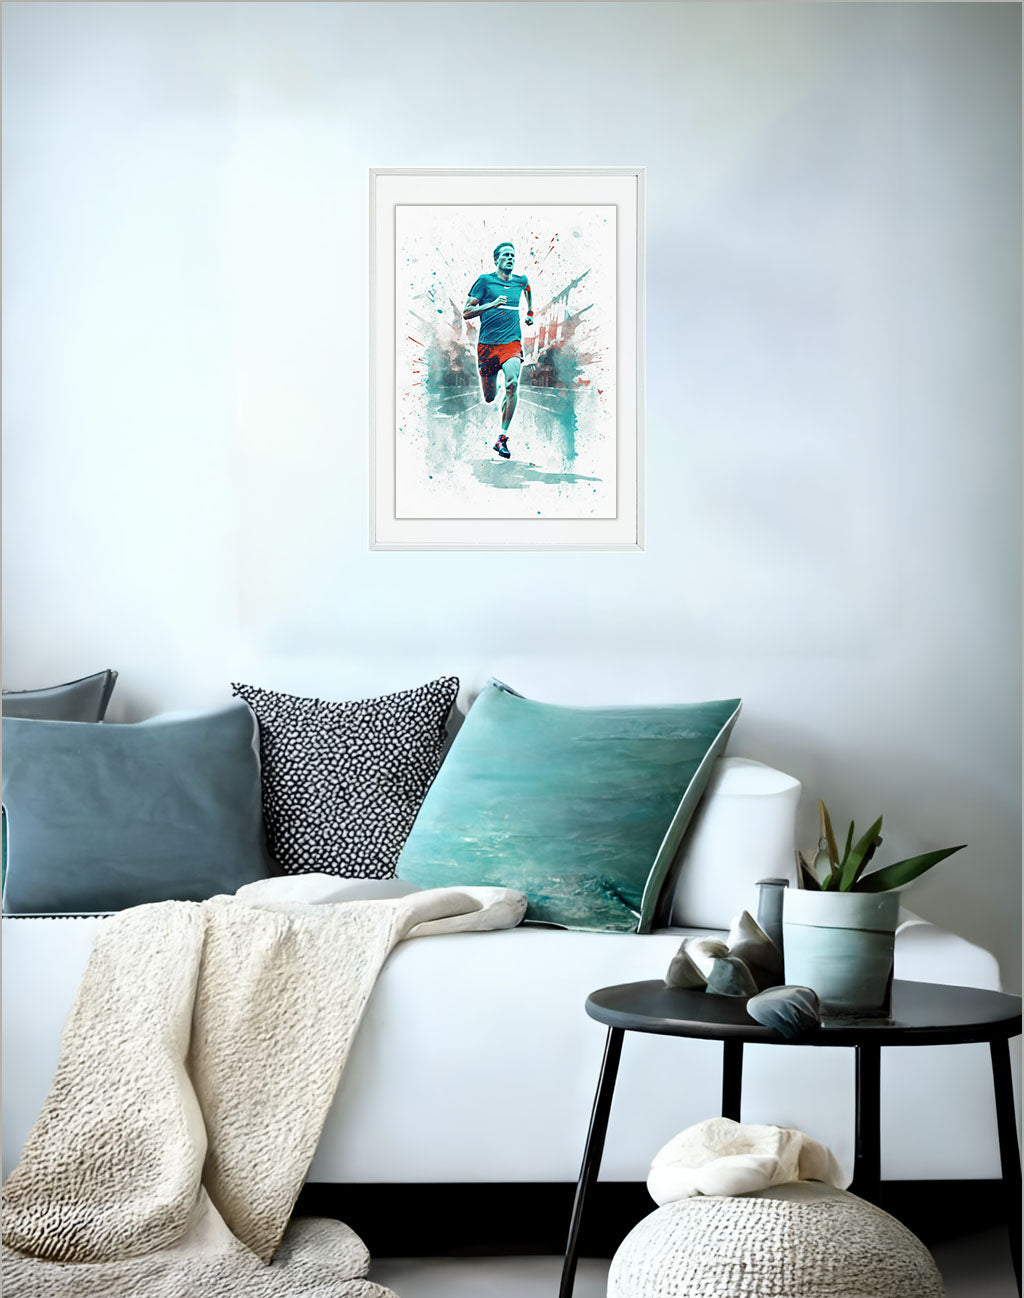 マラソンランナーのアートポスターソファ配置イメージ